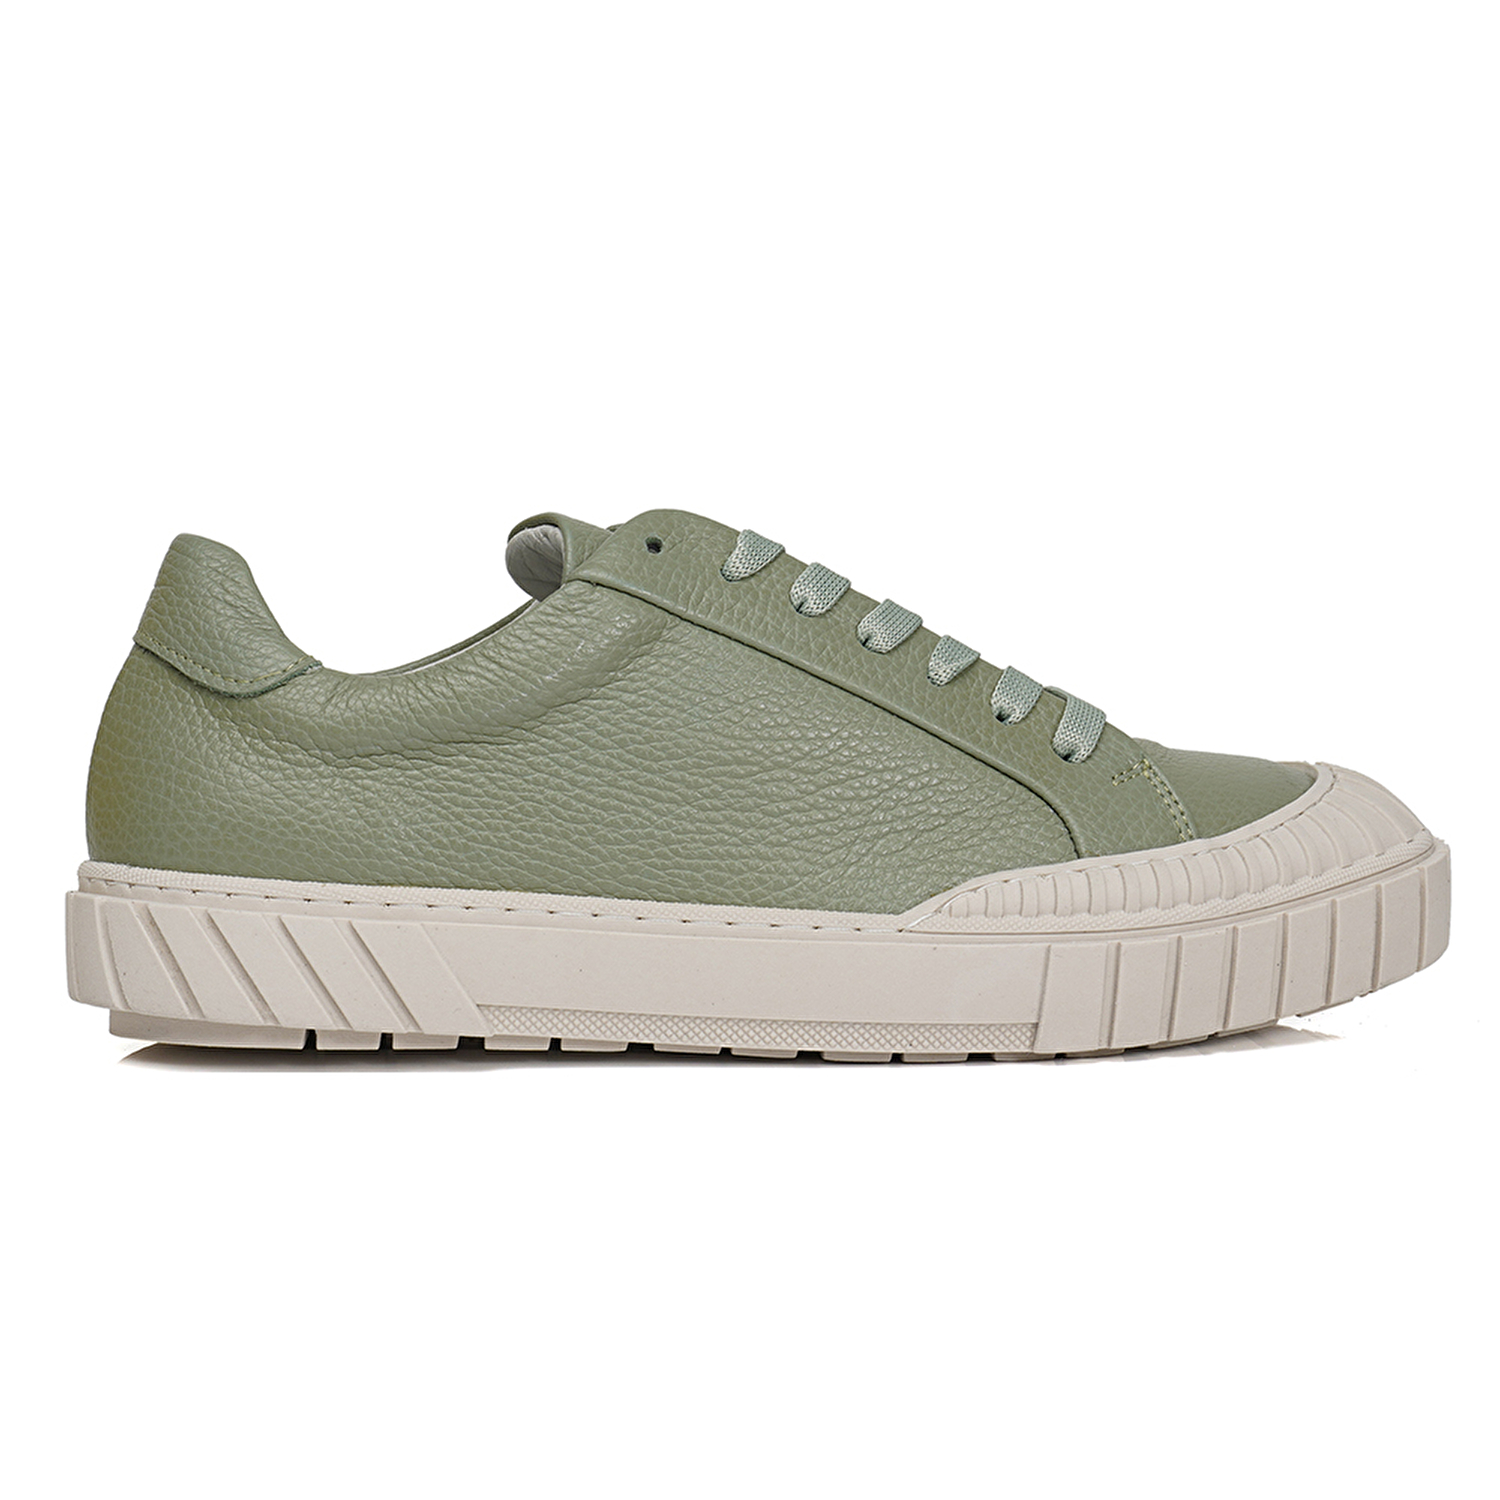 Kadın Yeşil Hakiki Deri Sneaker Ayakkabı 3Y2SA50765-1